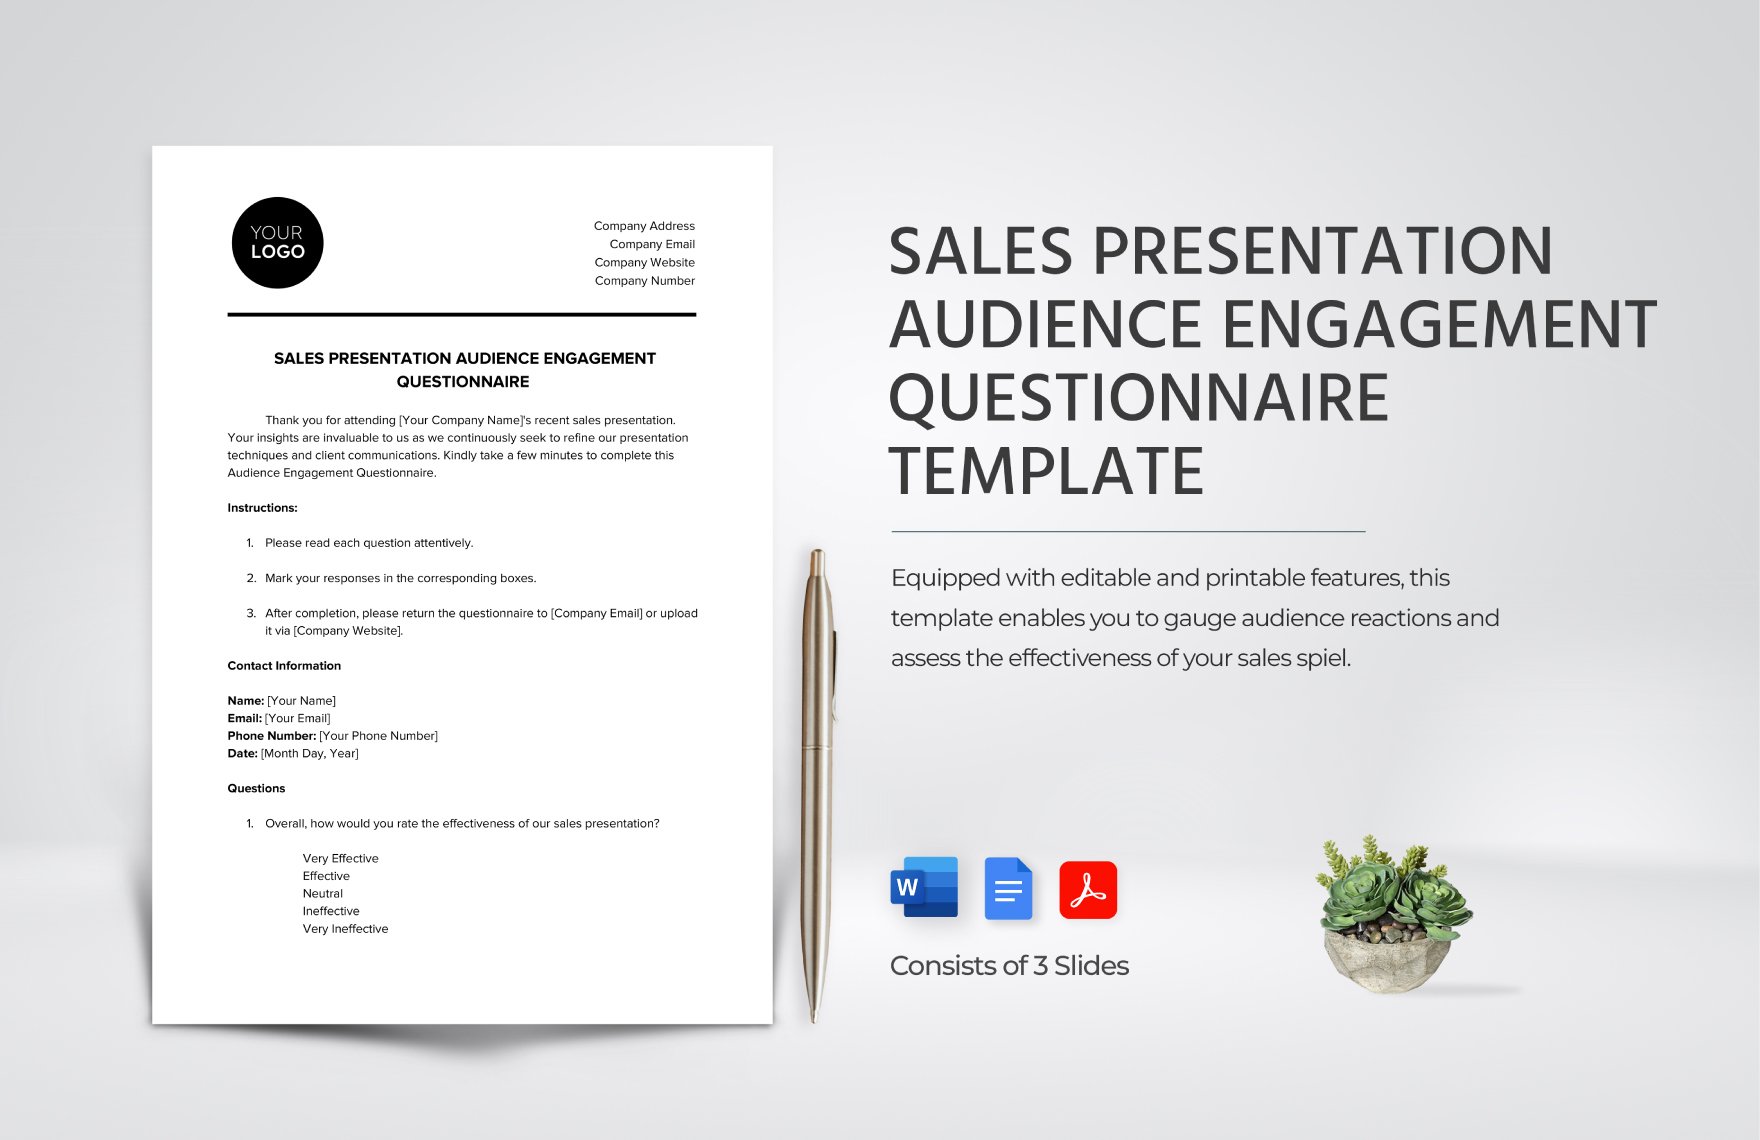 Sales Presentation Audience Engagement Questionnaire Template